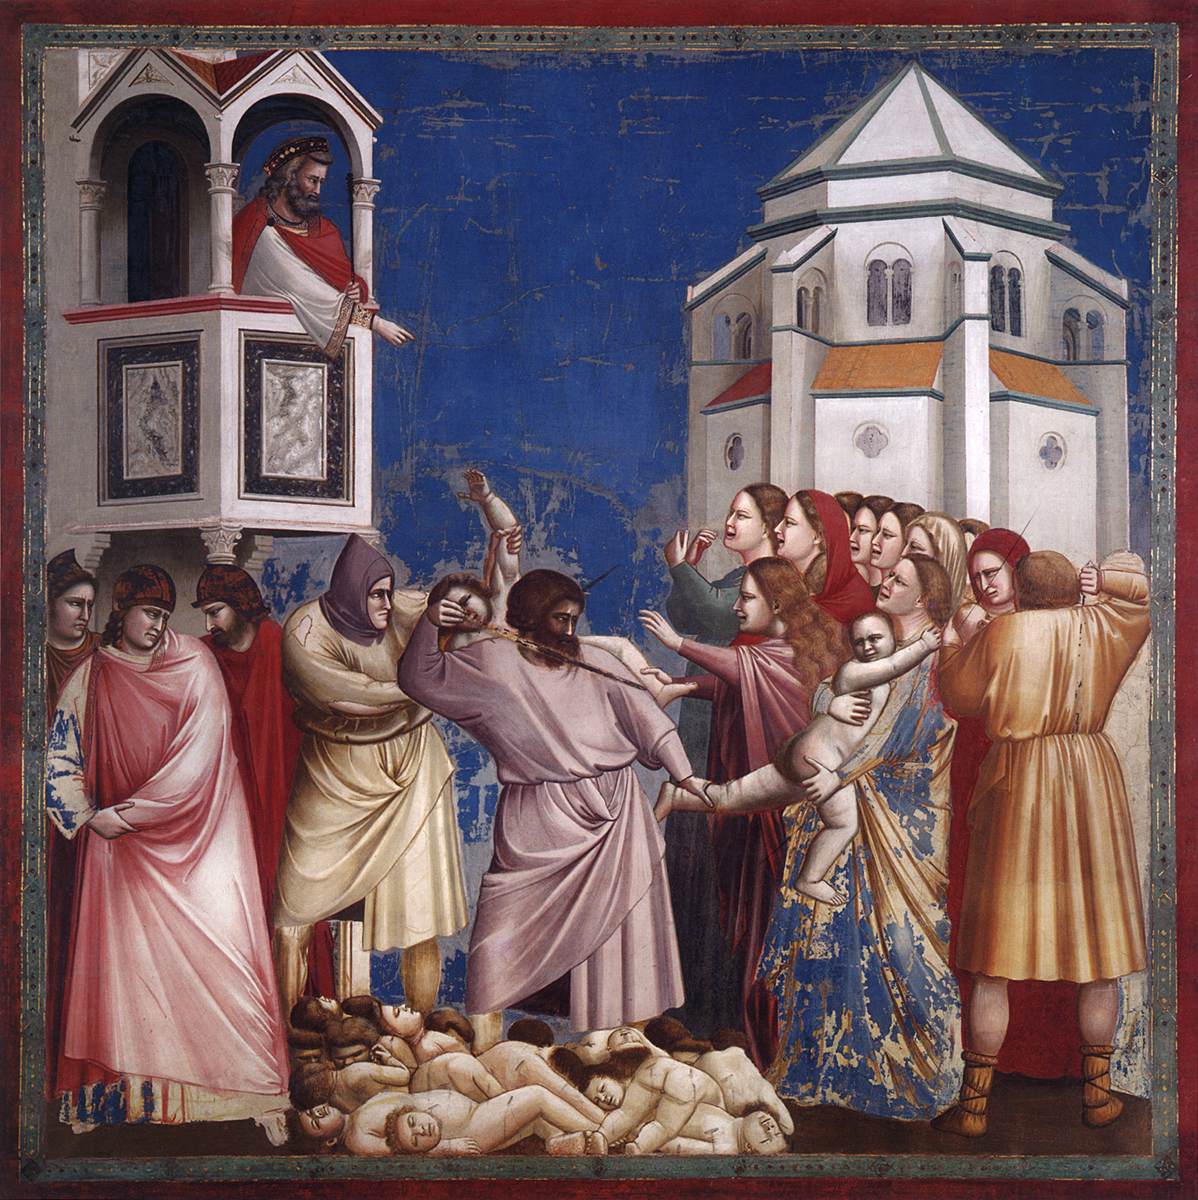 No 21 Escenas de La Vida de Cristo: 5 La Masacre de Los Inocentes